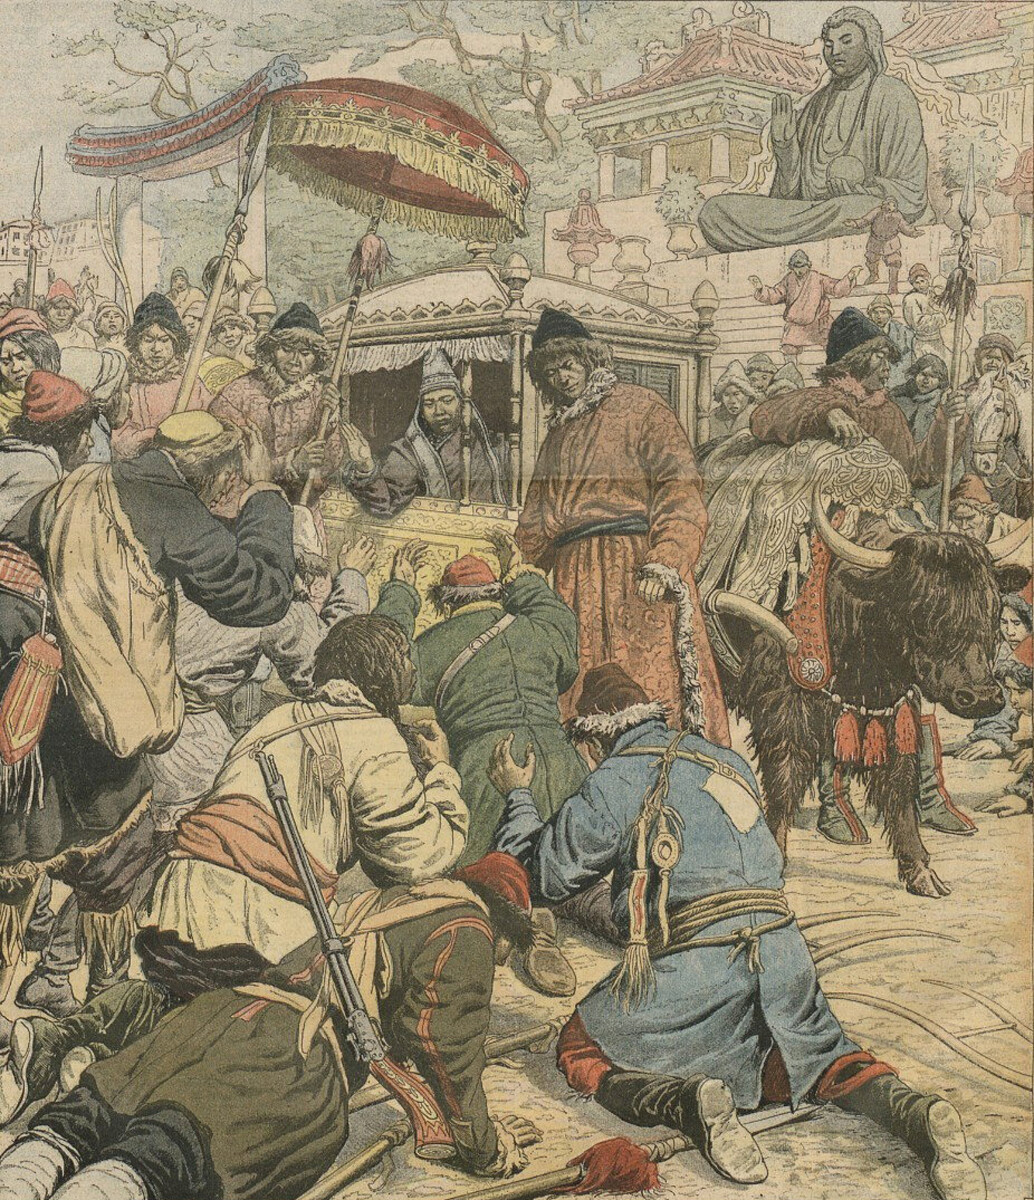 Ilustração da fuga de Thubten Gyatso, o 13º Dalai Lama, da invasão britânica.